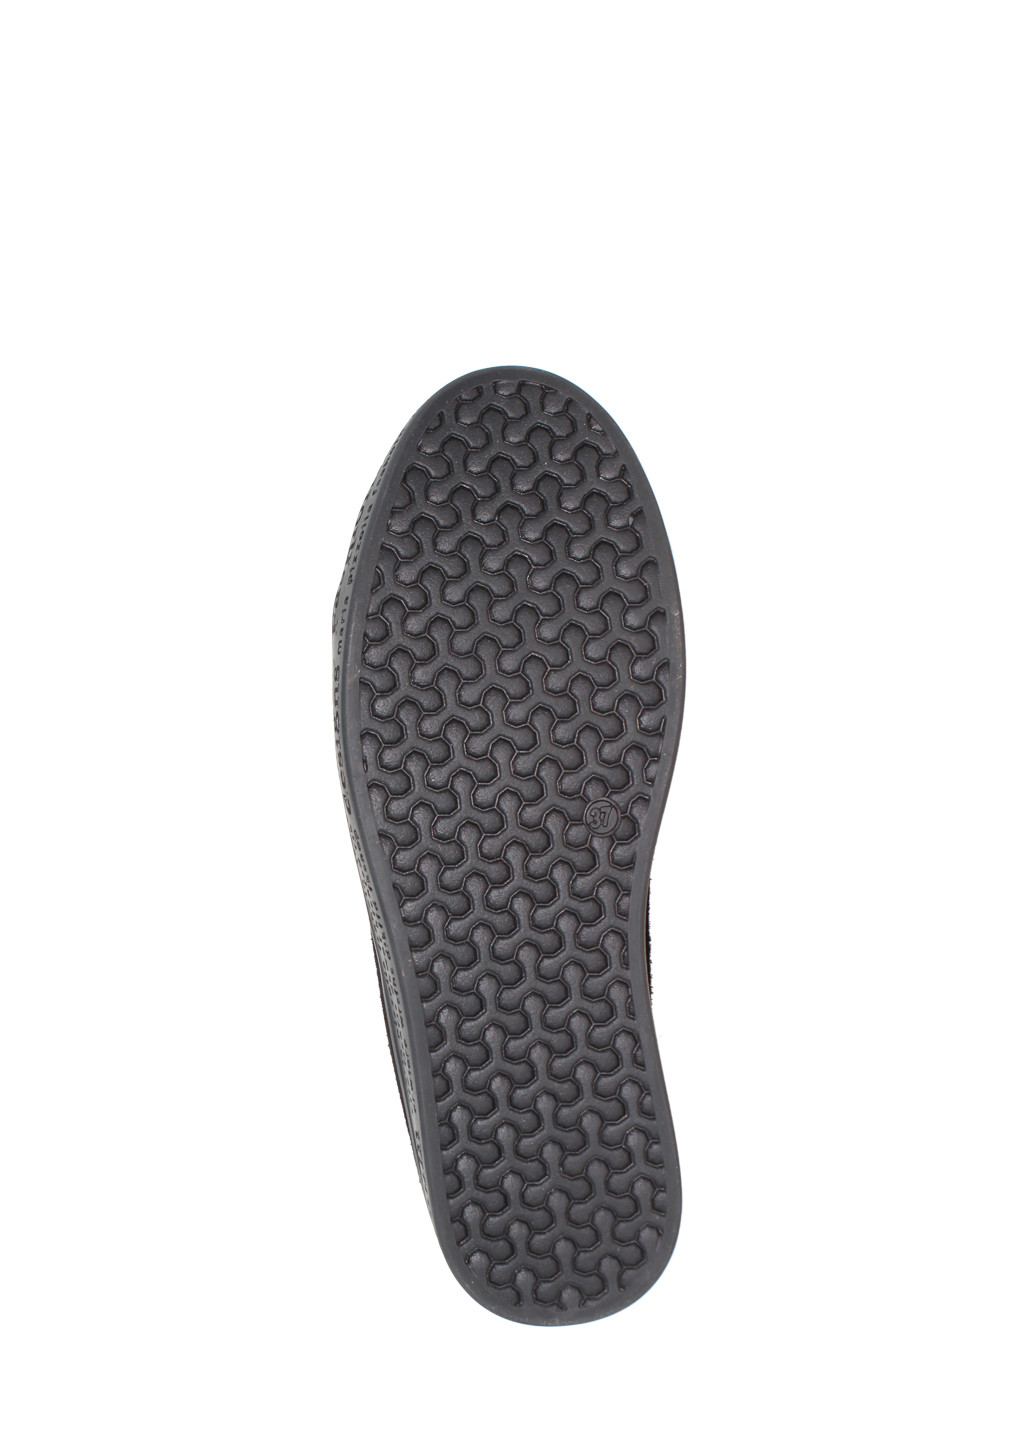 Зимние ботинки biz19-65854 черный Bizoni из натуральной замши